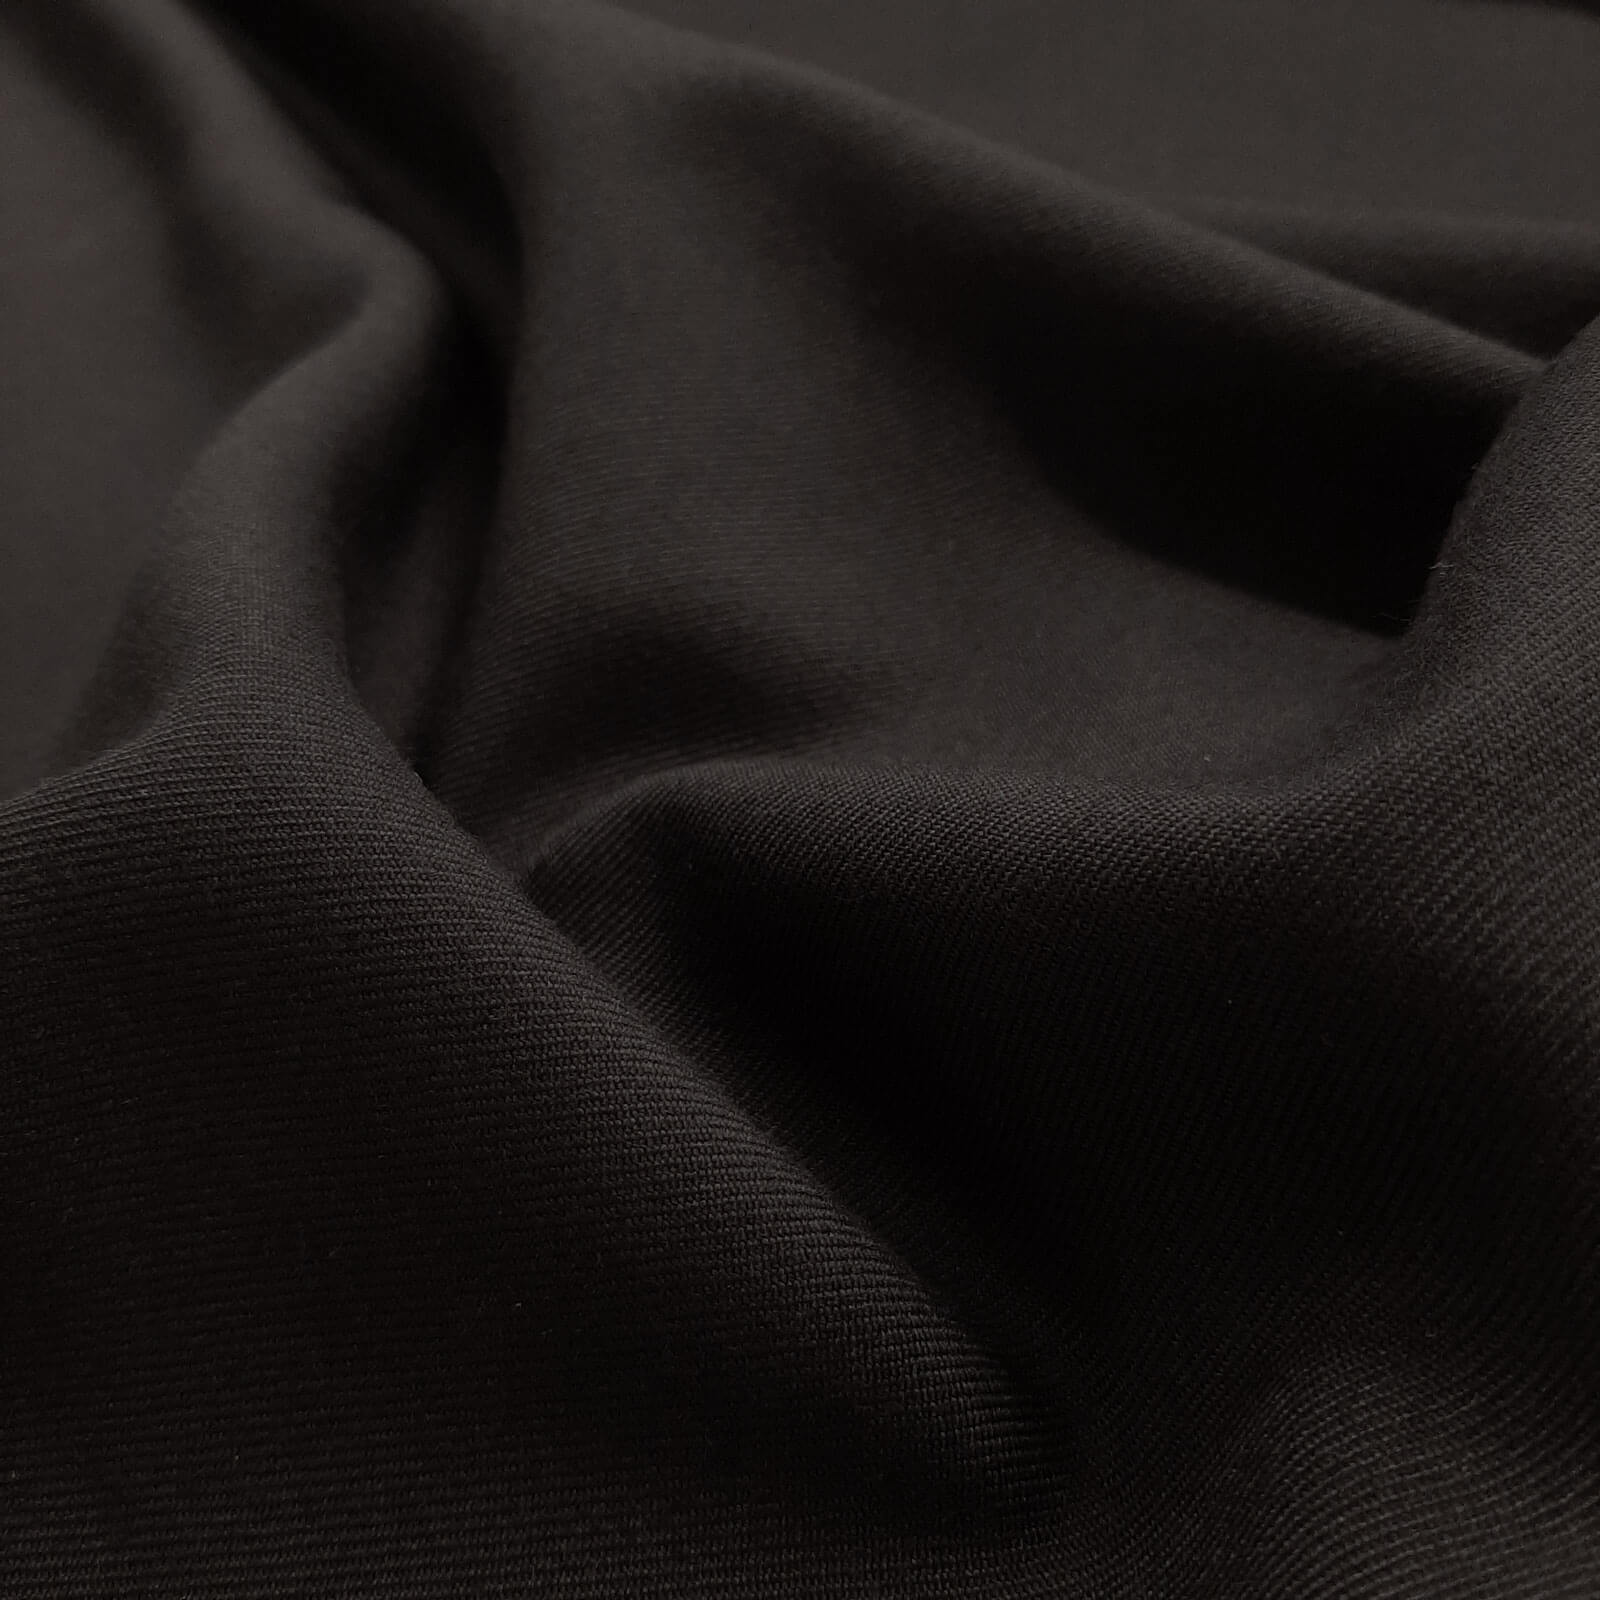 Franziskus - Panno di lana / Panno uniforme - Nero 